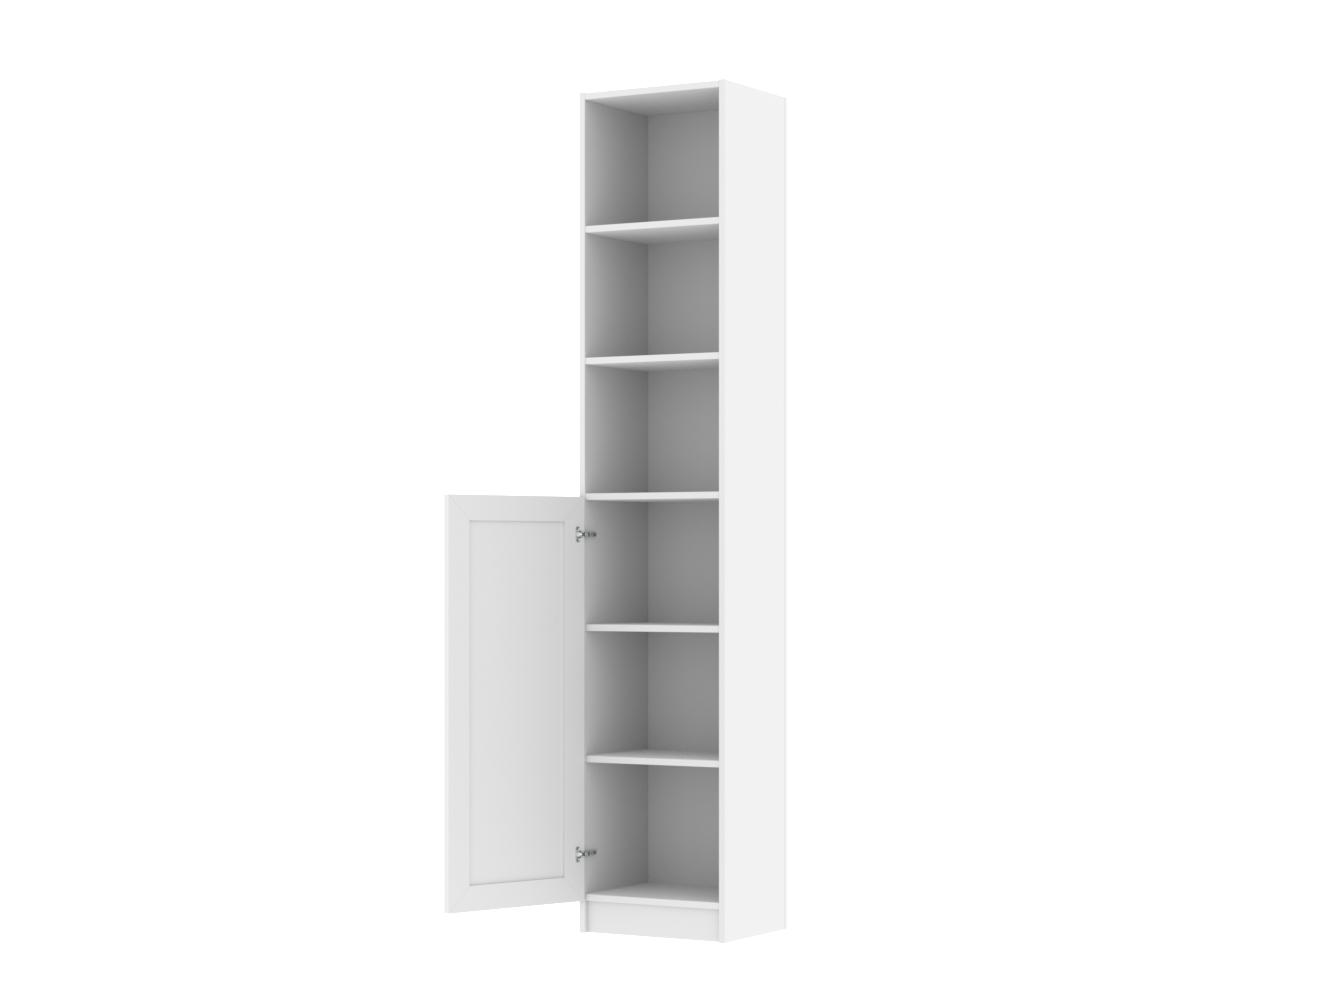 Изображение товара Книжный шкаф Билли 65 white ИКЕА (IKEA), 40x30x202 см на сайте adeta.ru